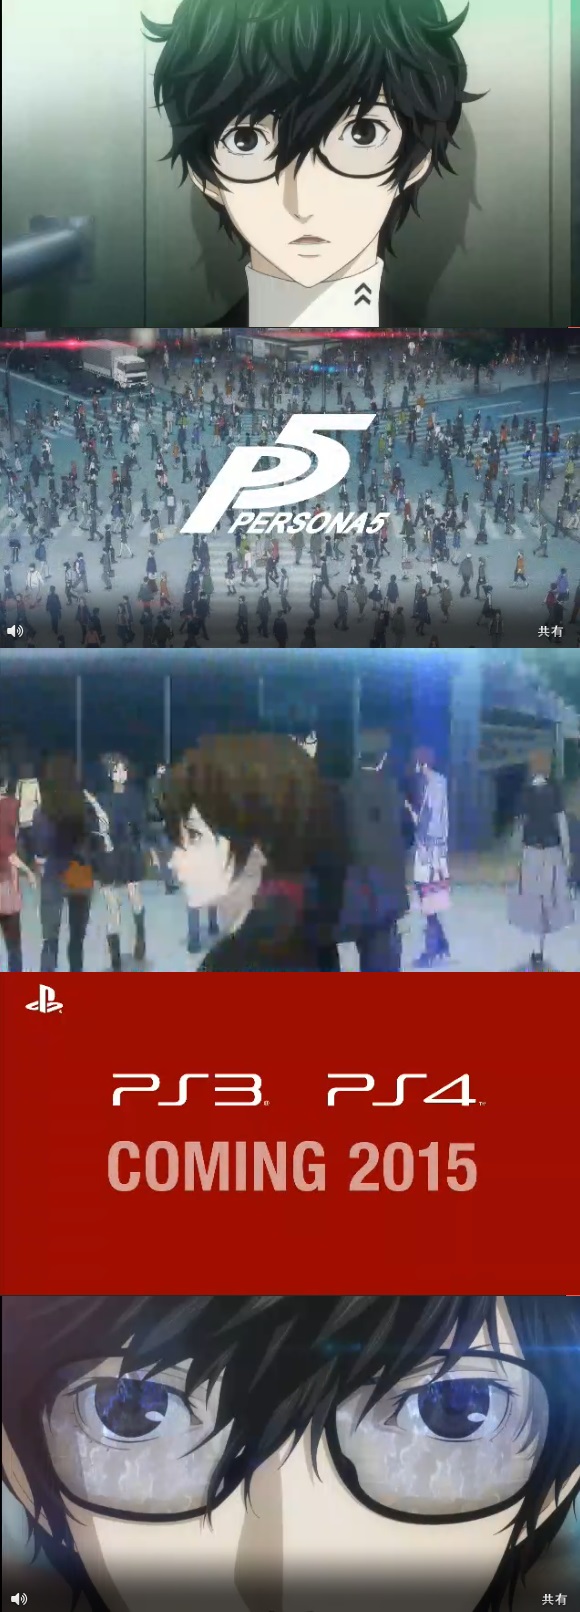 ペルソナ5 PS3/PS4で2015年発売決定！！  特別先行映像